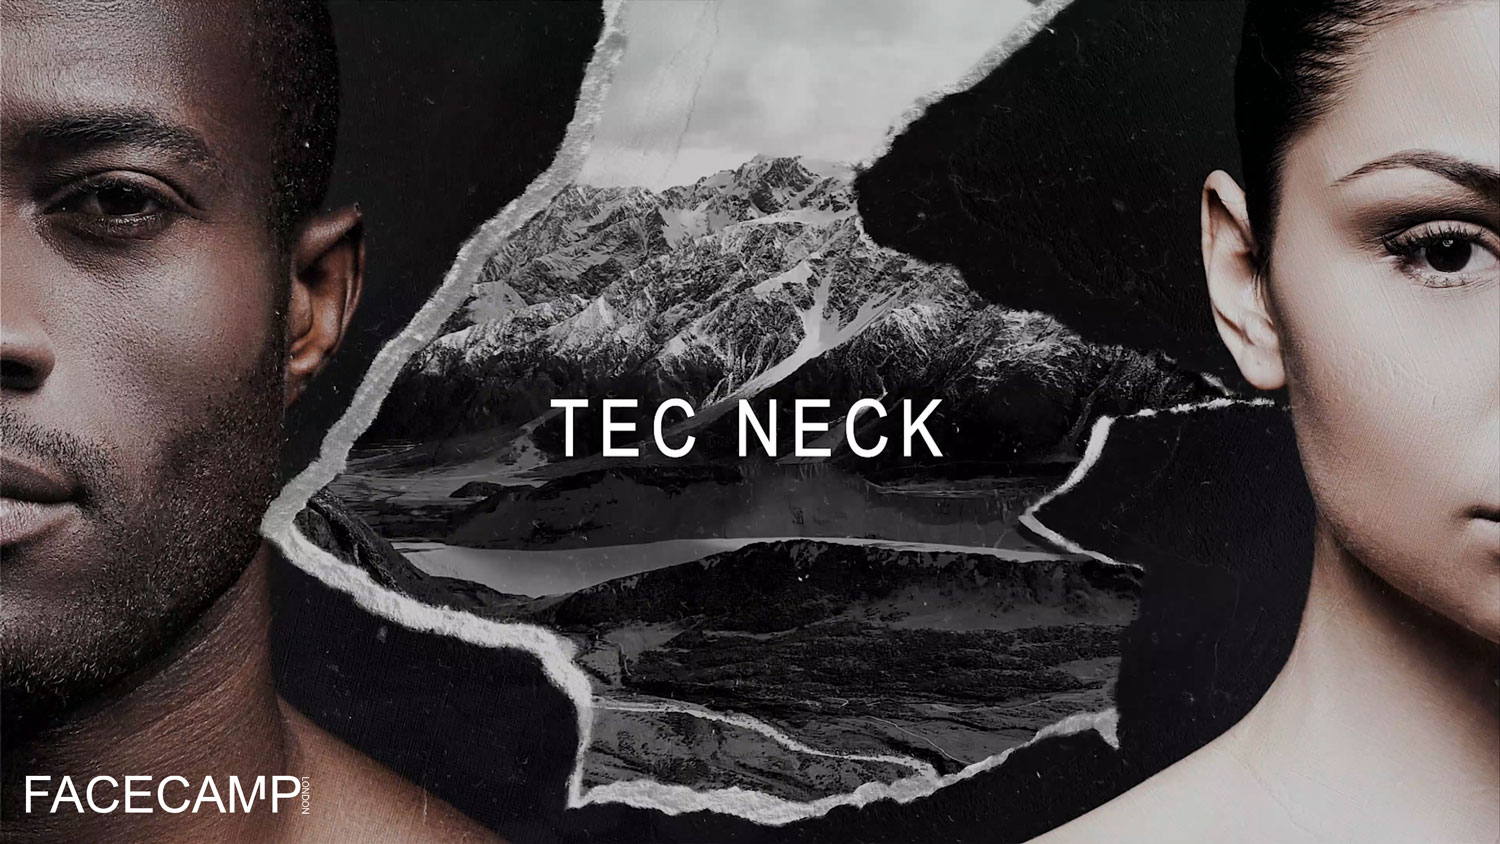 Tec Neck